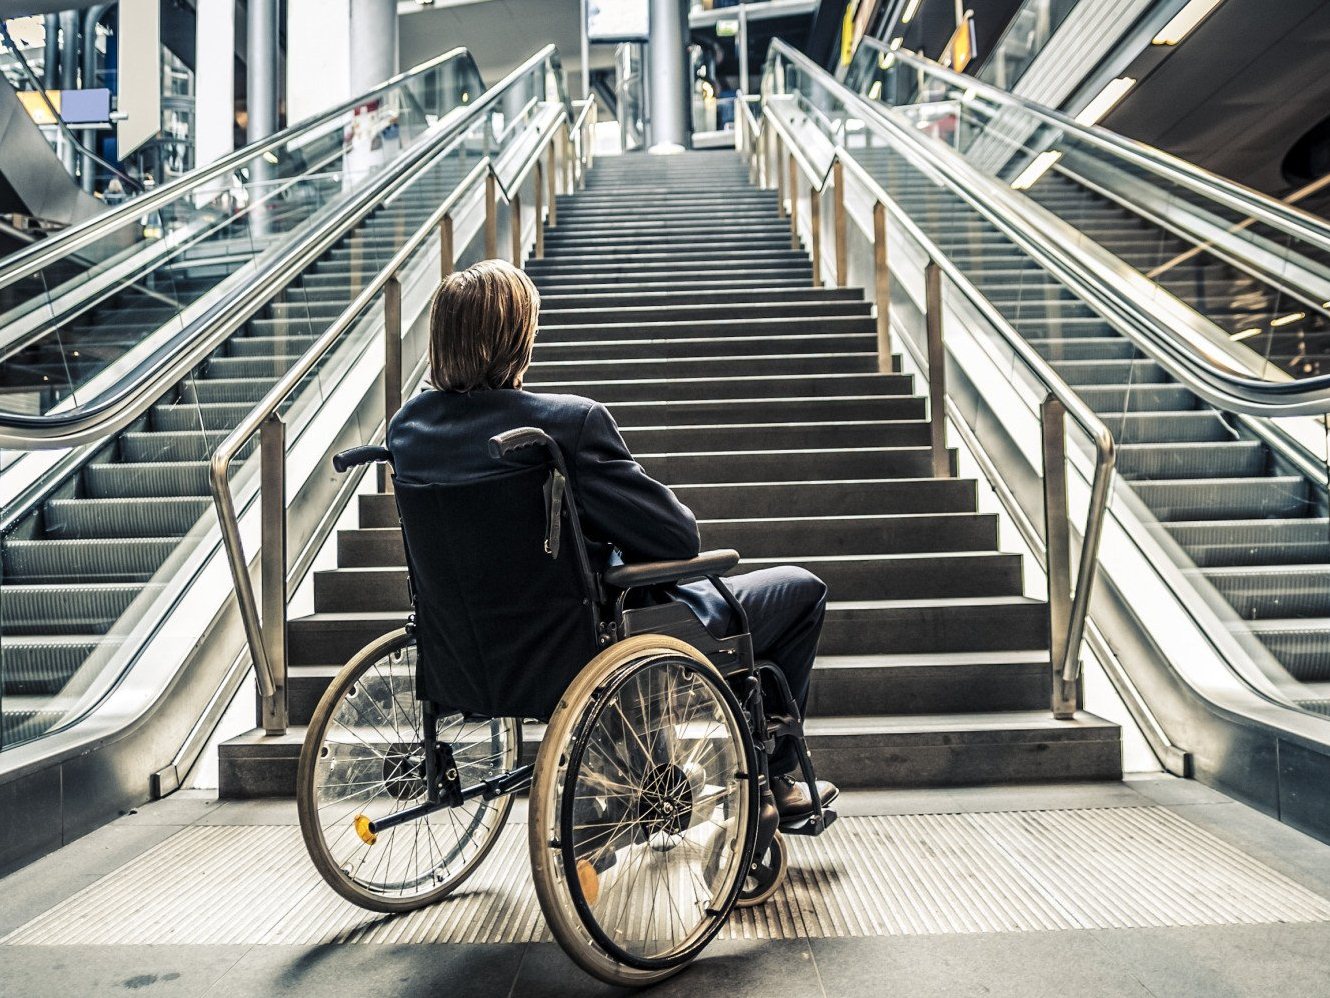 Банк России готовит комплекс мер по повышению доступности финансовых услуг для людей с инвалидностью